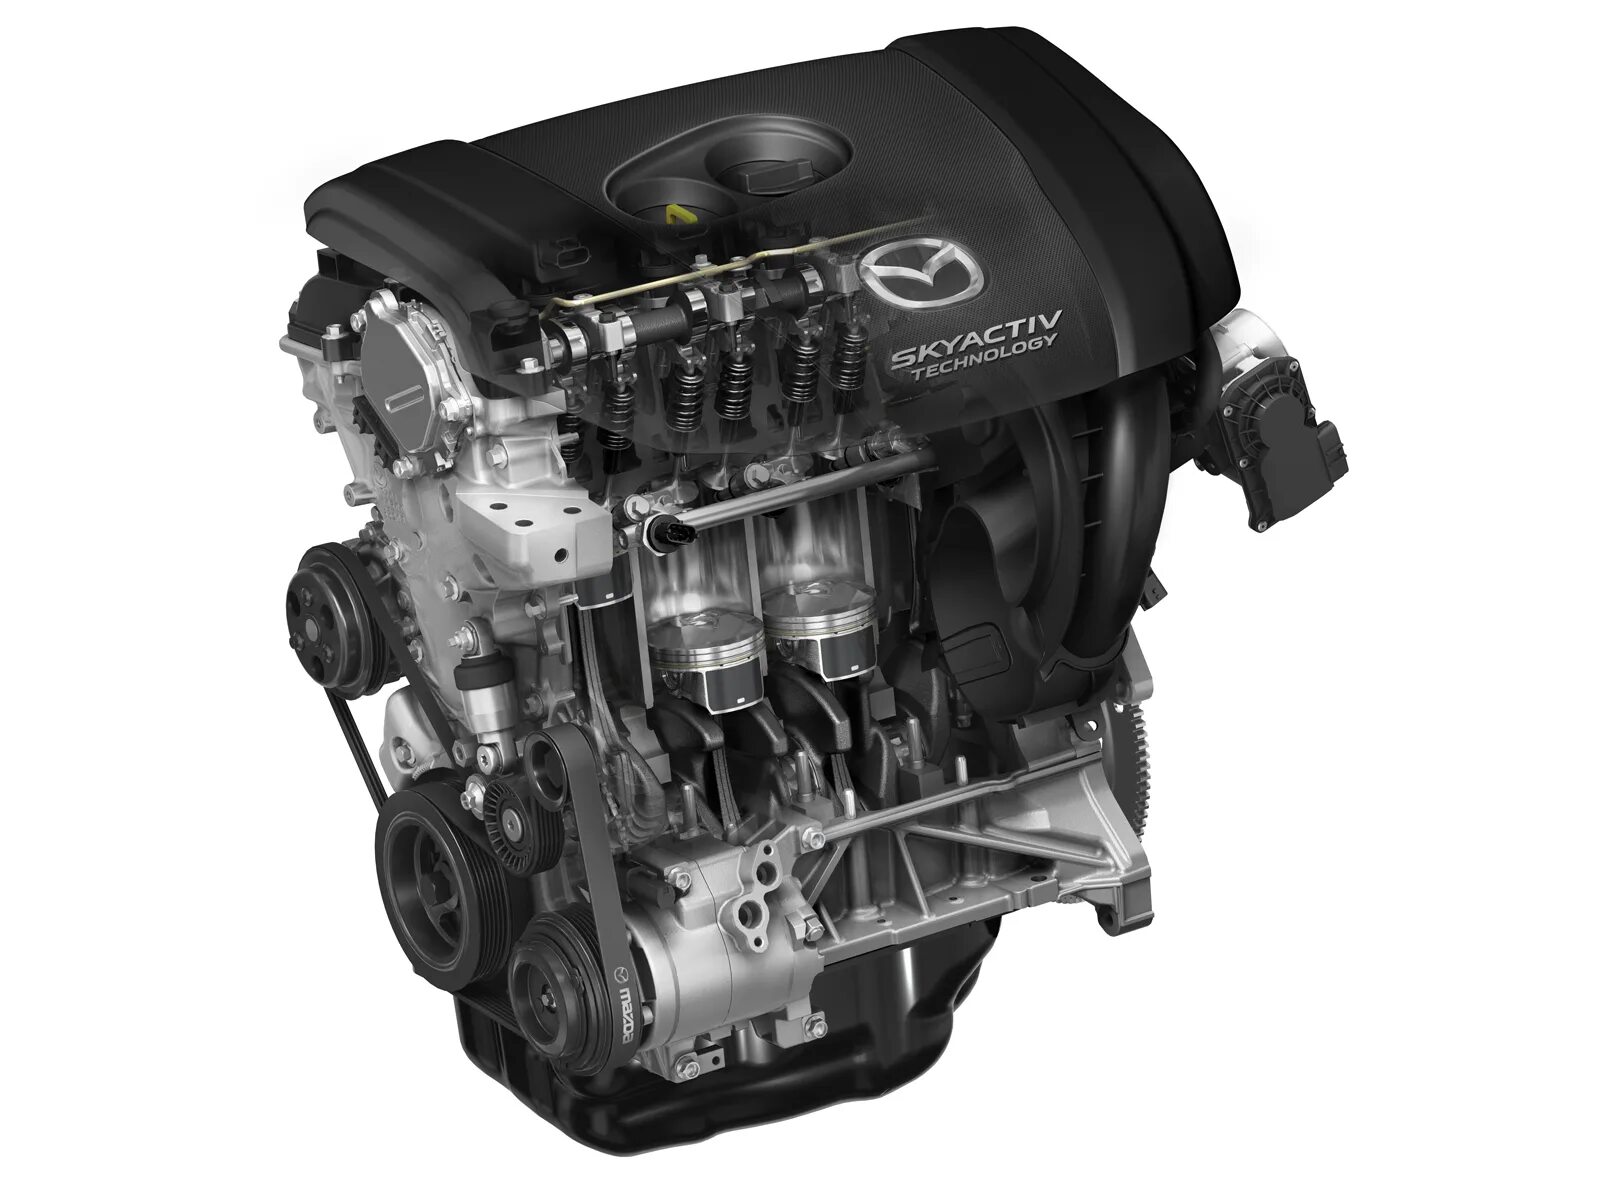 Двигатель мазда 6 2 литра. Мотор скайактив 2.5. Двигатель Mazda CX-5 2.0 SKYACTIV. Двигатель Мазда SKYACTIV 2.0. Двигатель Мазда 6 2.5 скайактив.